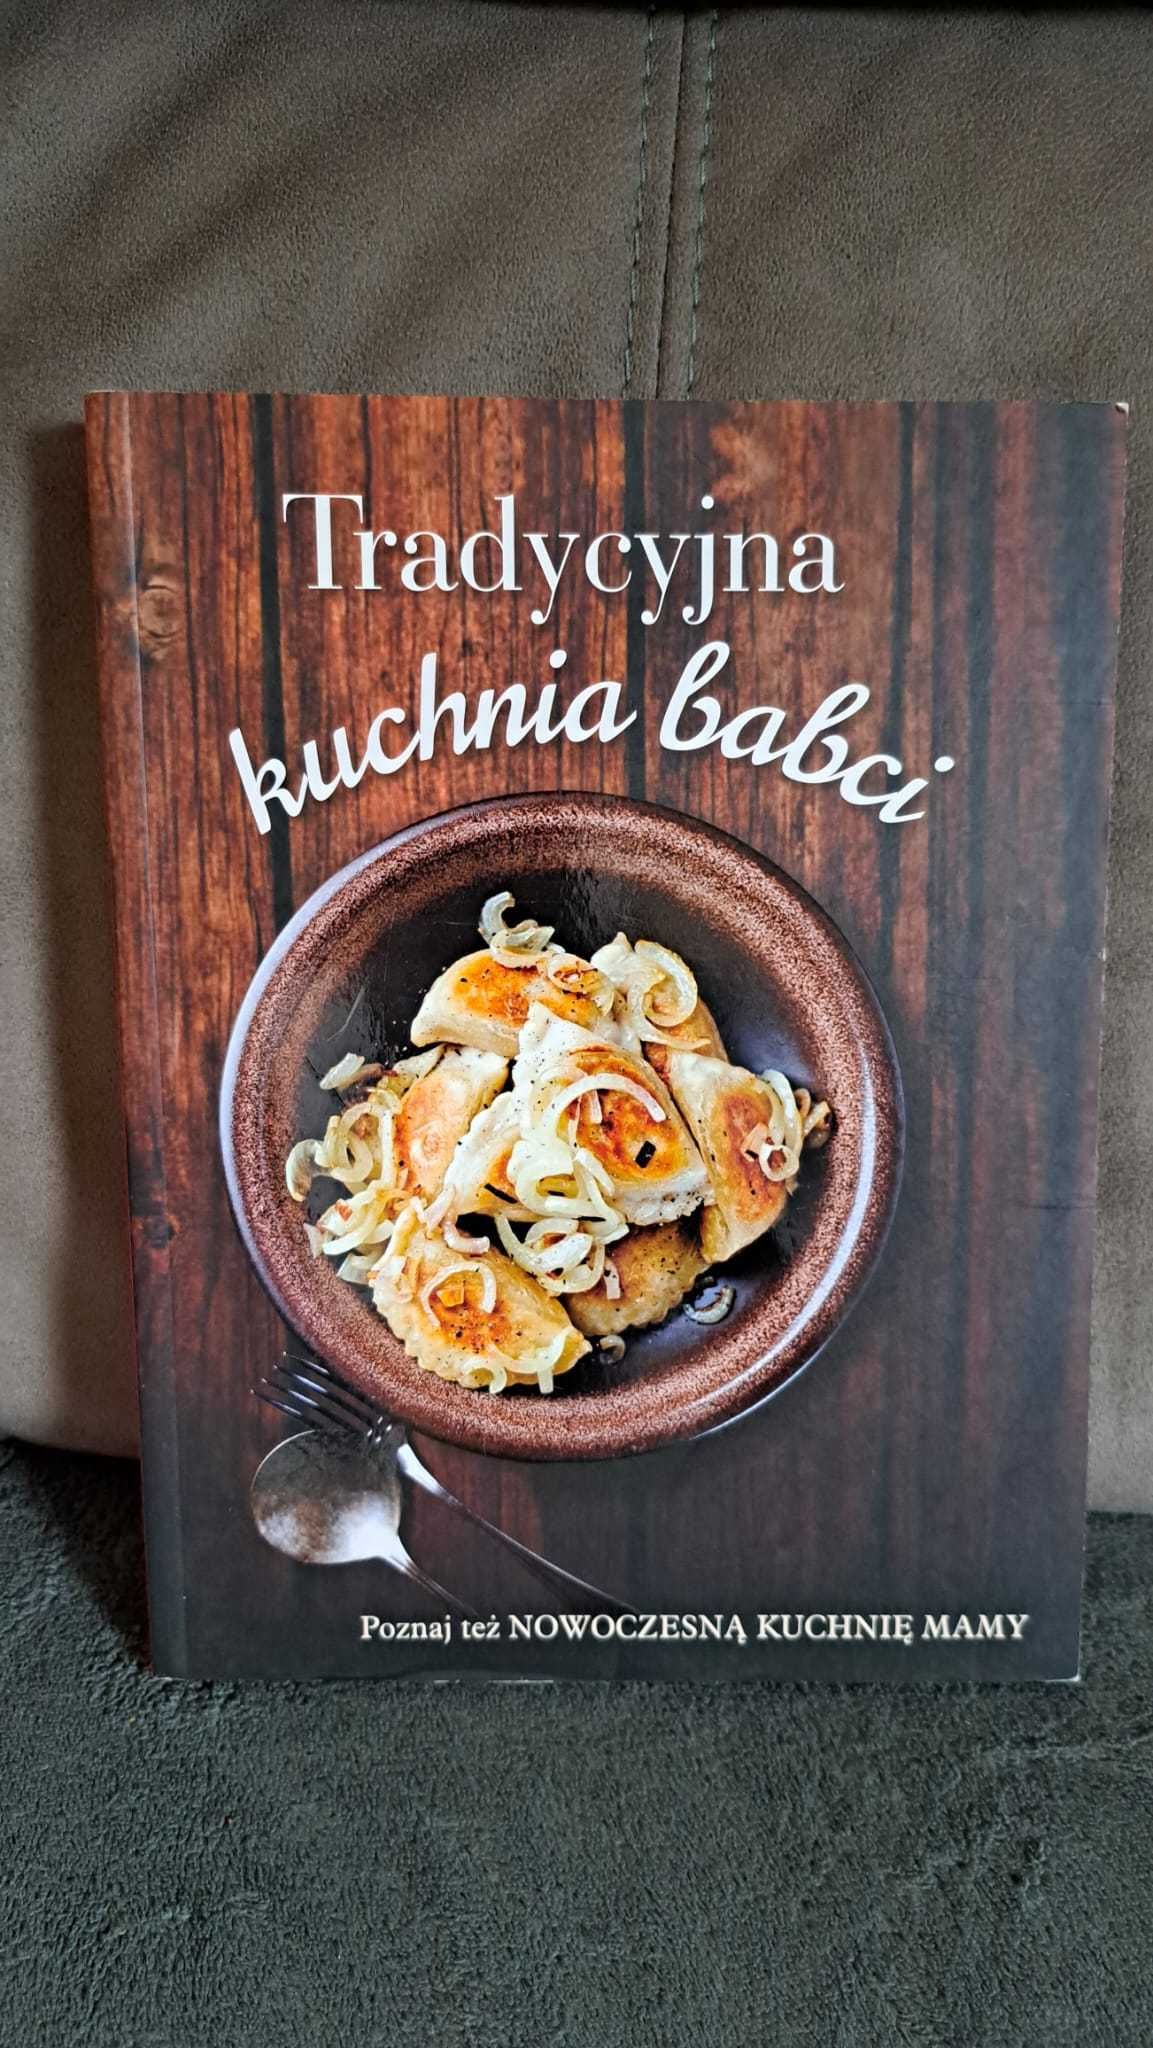 Książka dwustronna: Nowoczesna kuchnia mamy & Tradycyjna kuchnia babci